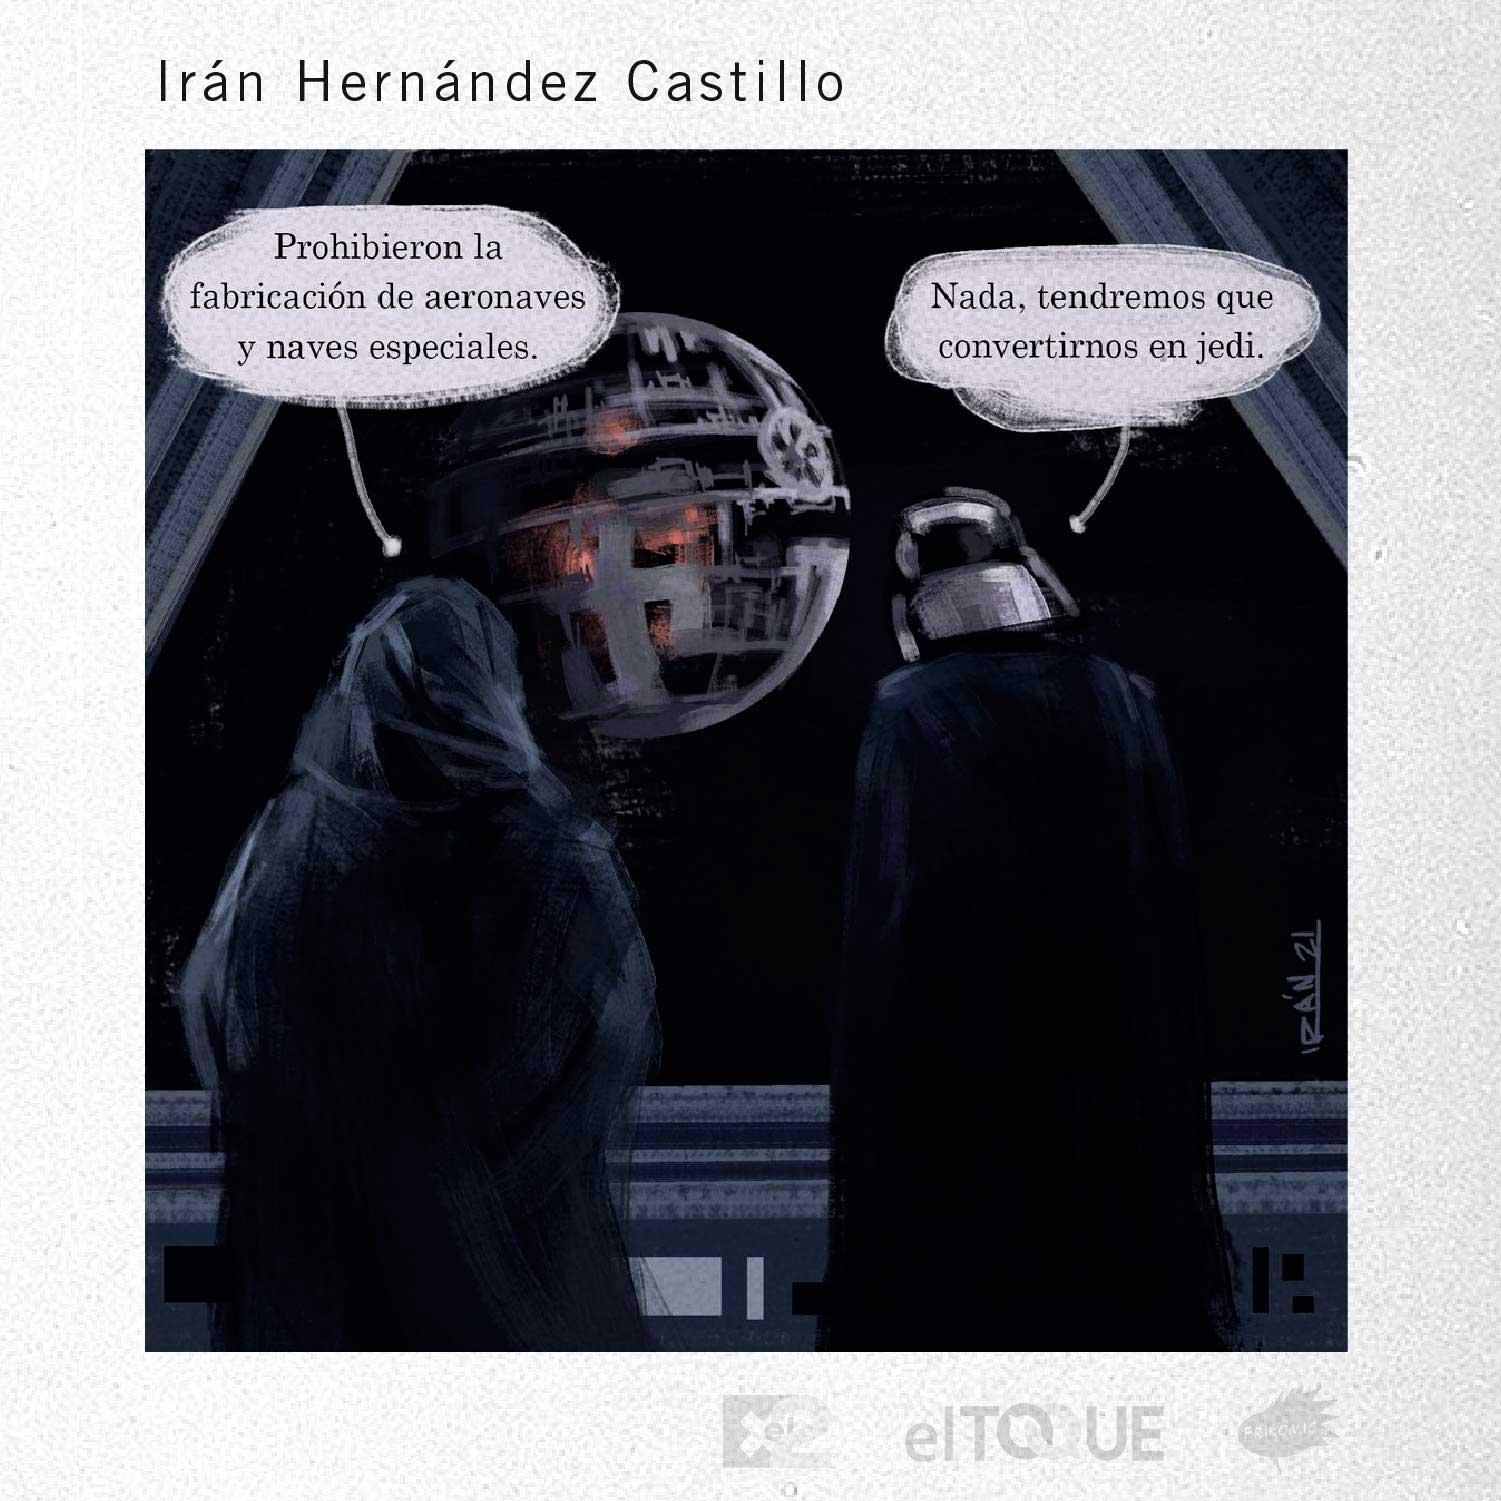 21-02-Hernandez-Iran-PROHIBICIONES-SECTOR-PRIVADO-CUBA.jpg